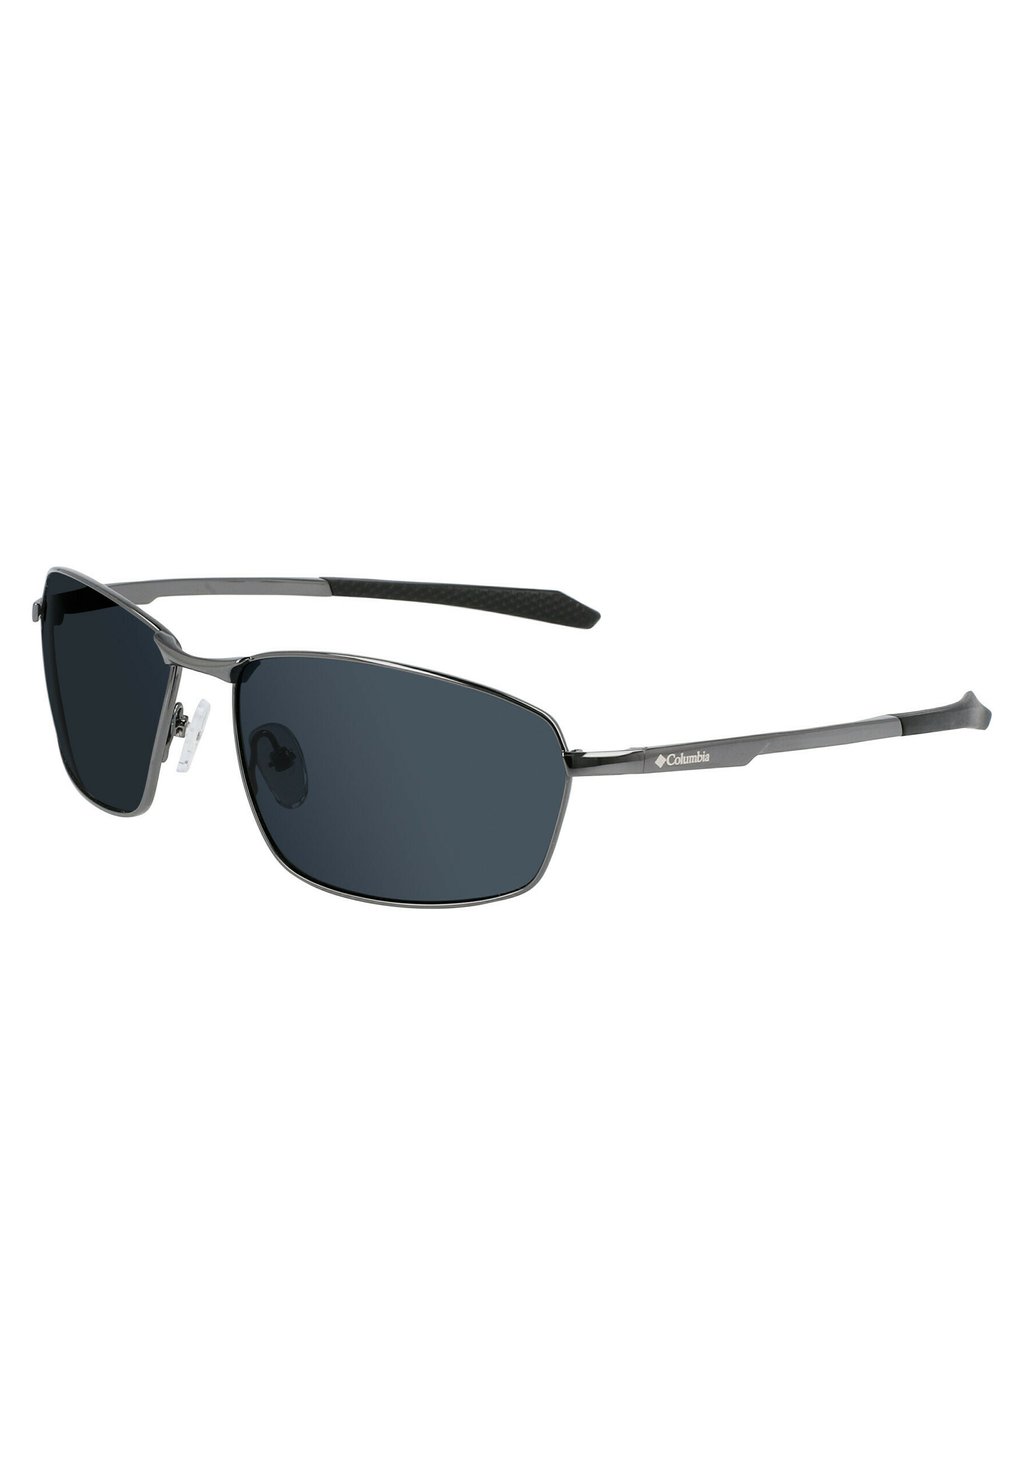 Солнцезащитные очки FIR RIDGE Columbia, цвет shiny dark gunmetal solid smok